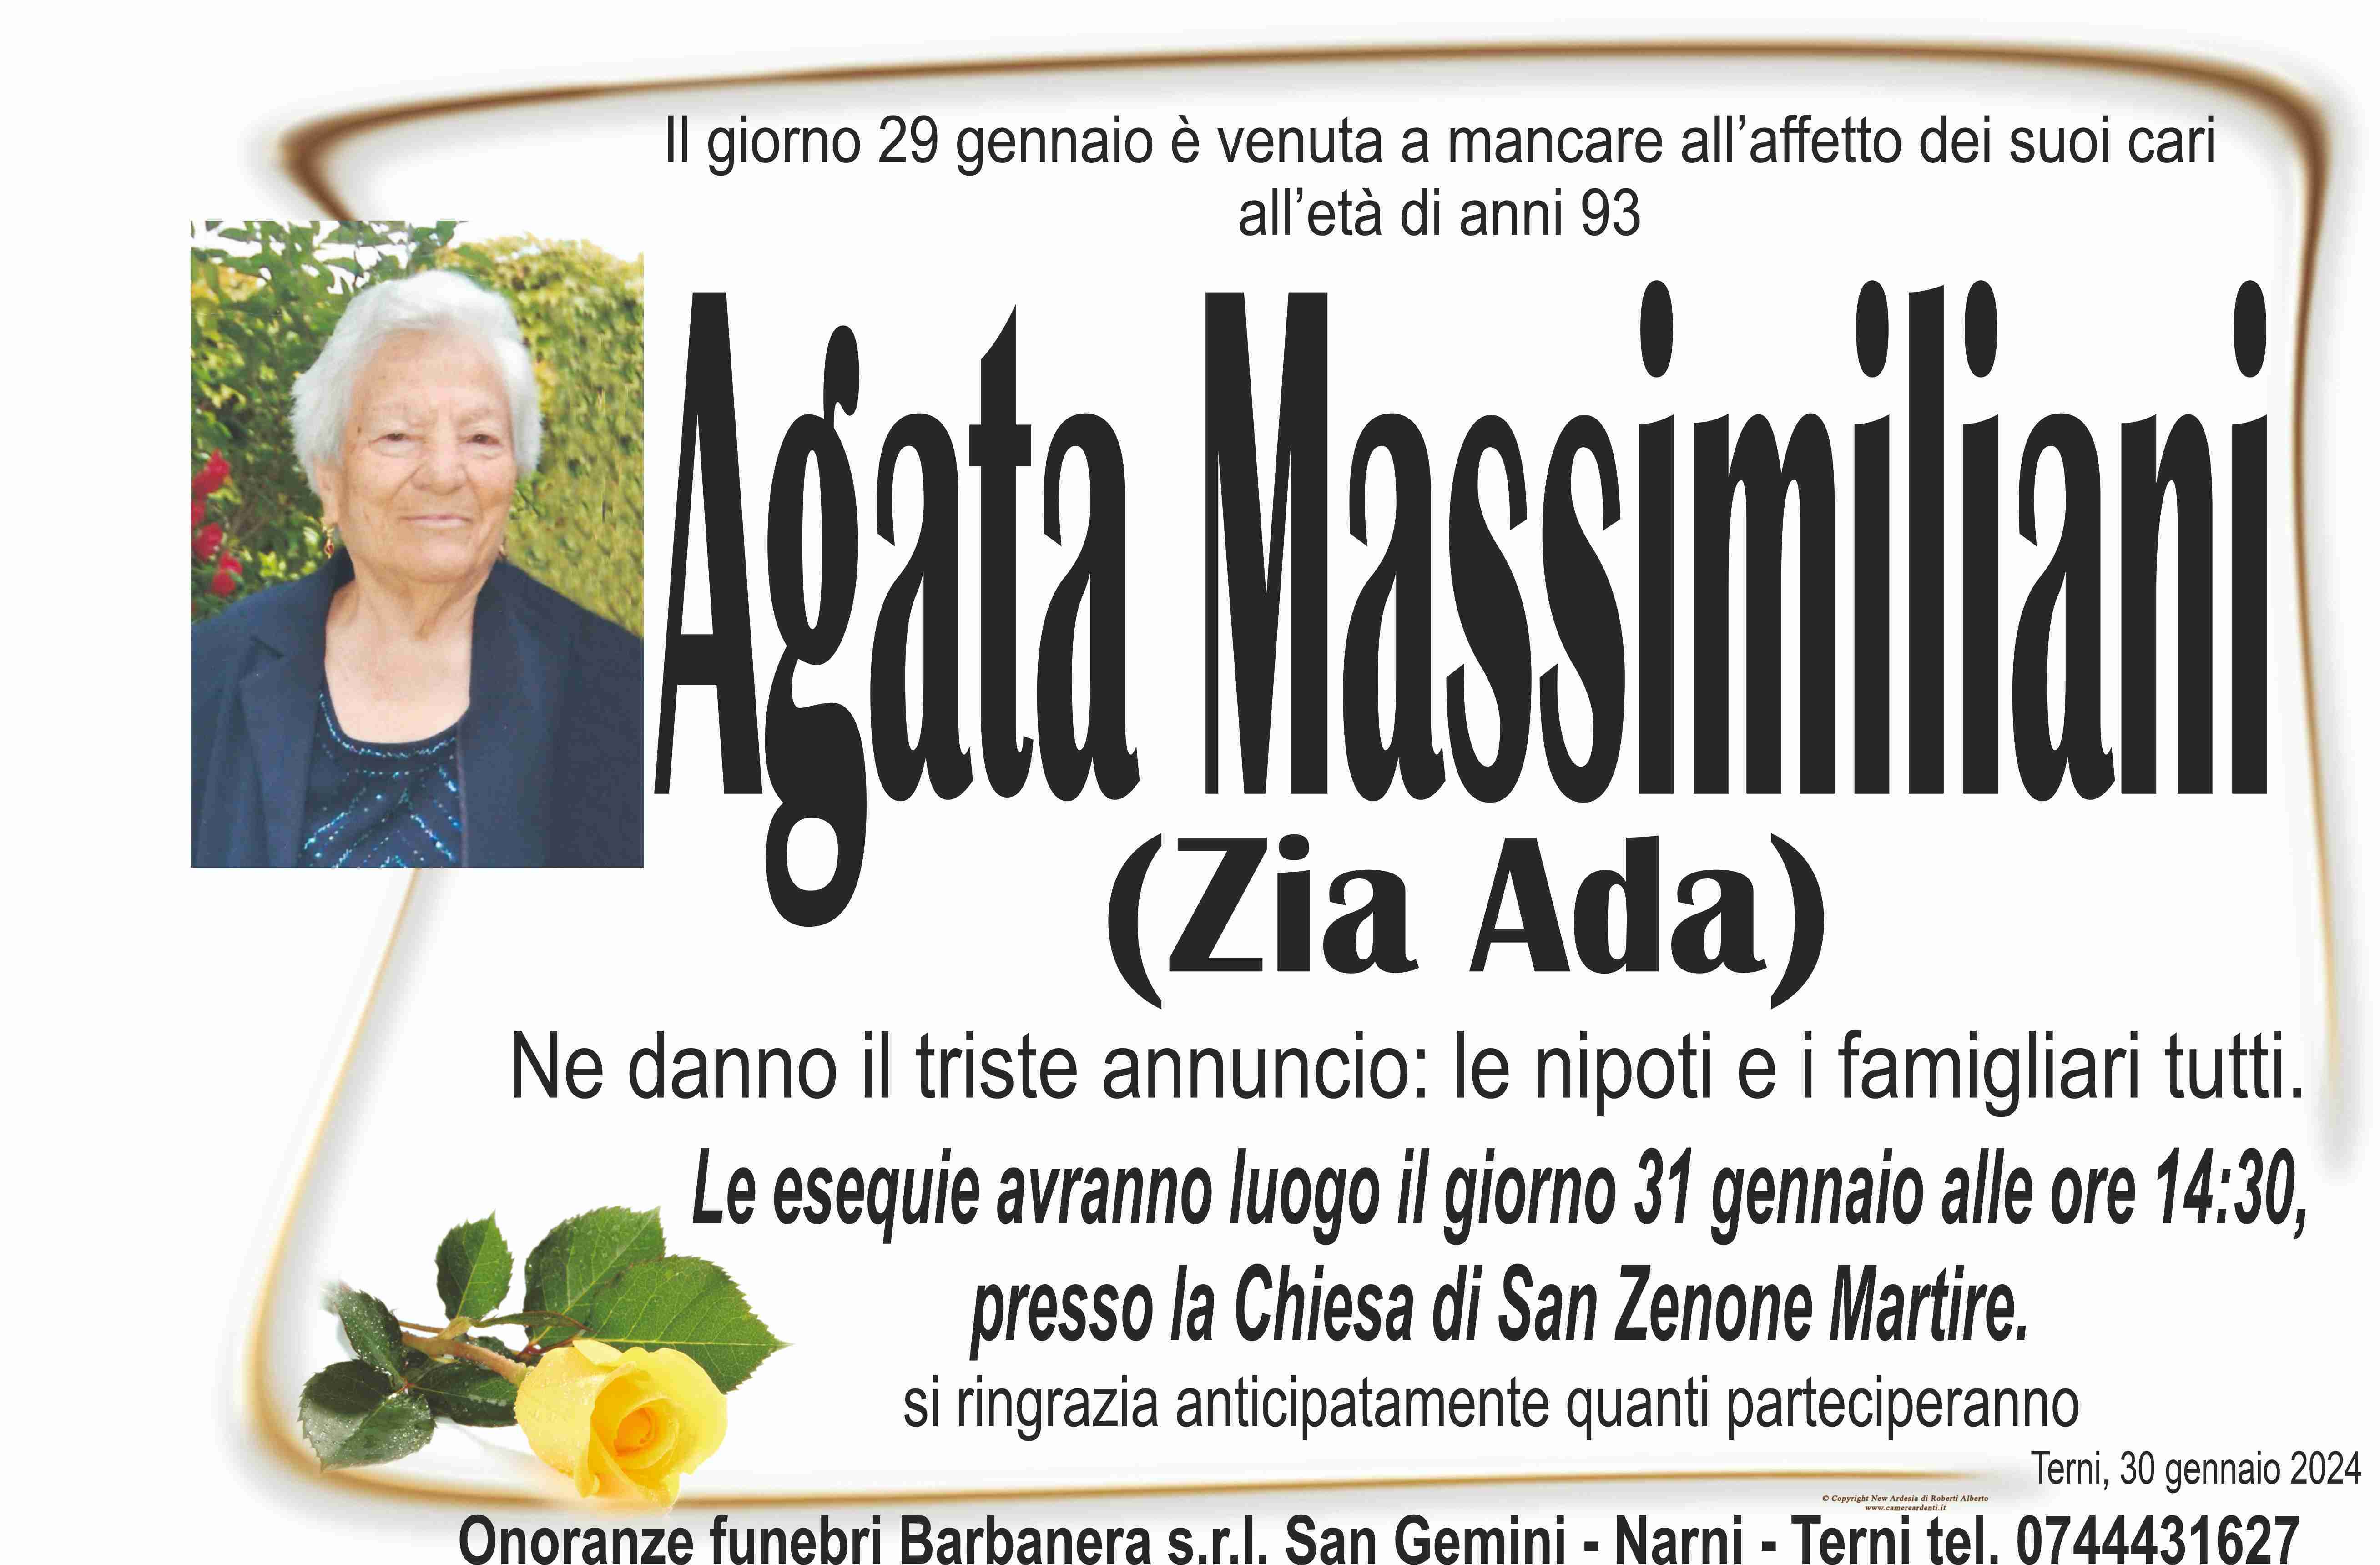 Agata Massimiliani